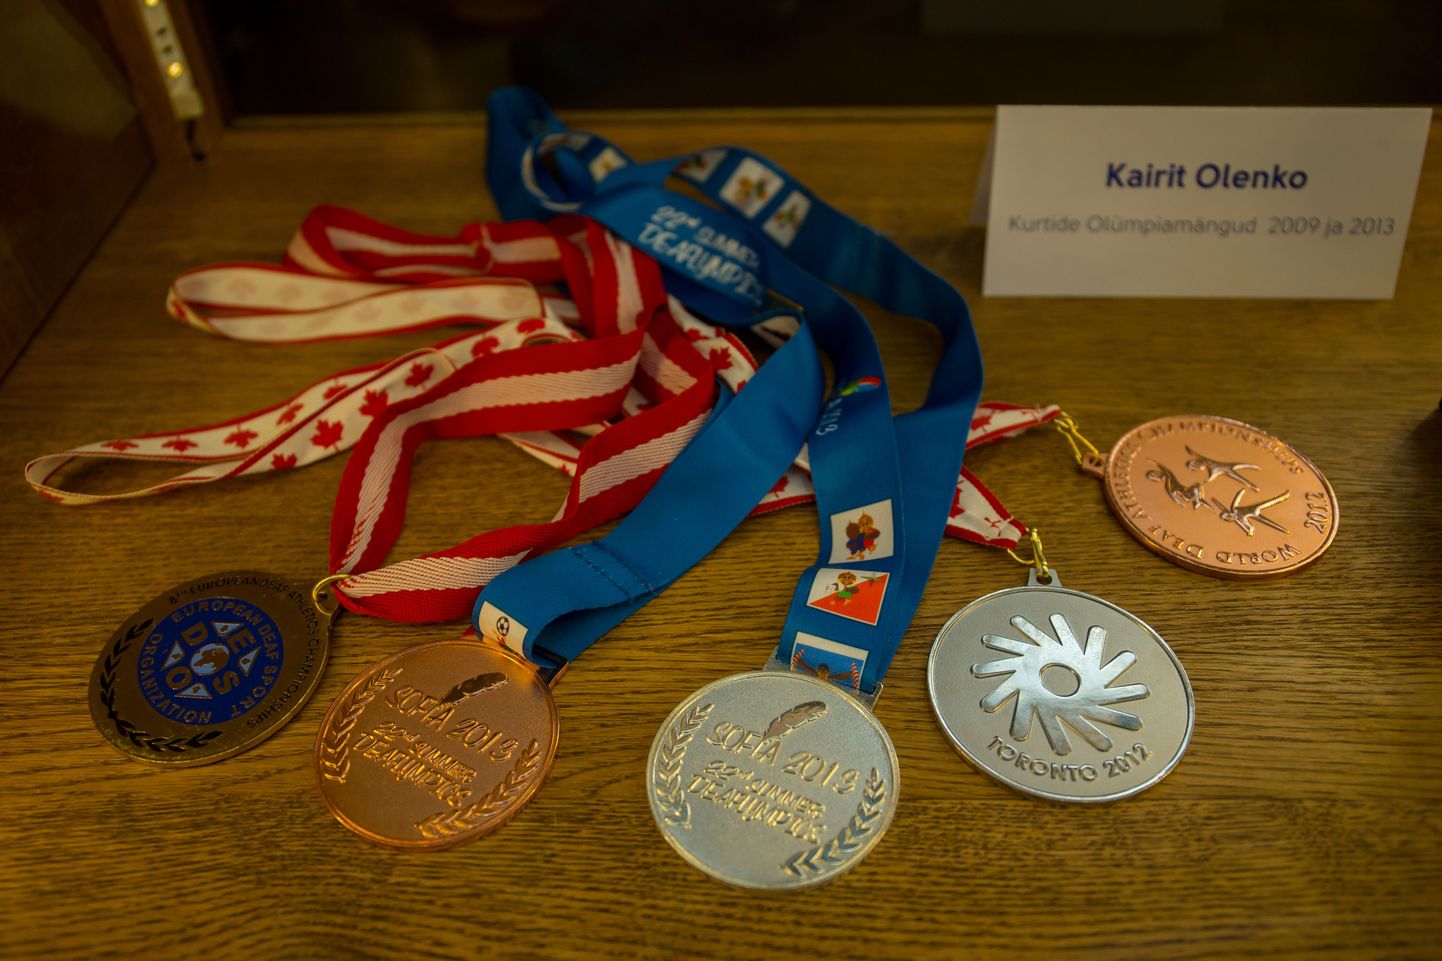 Eesti parasportlased avasid prestiižsemate medalite näituse ja tutvustasid uue hooaja plaane.